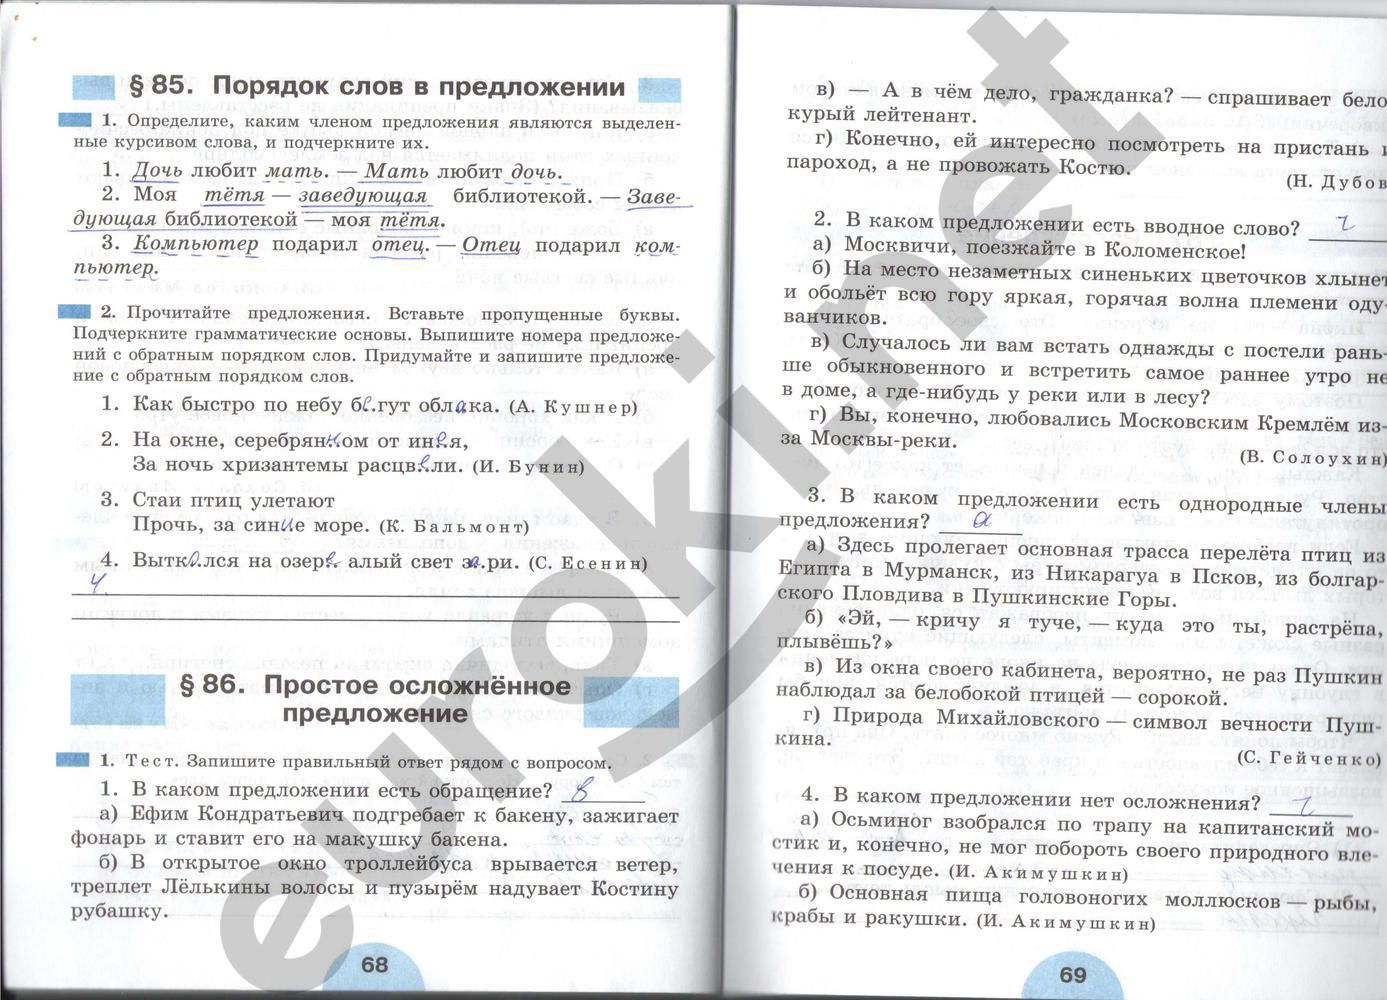 ГДЗ Русский язык 6 класс - стр. 68-69